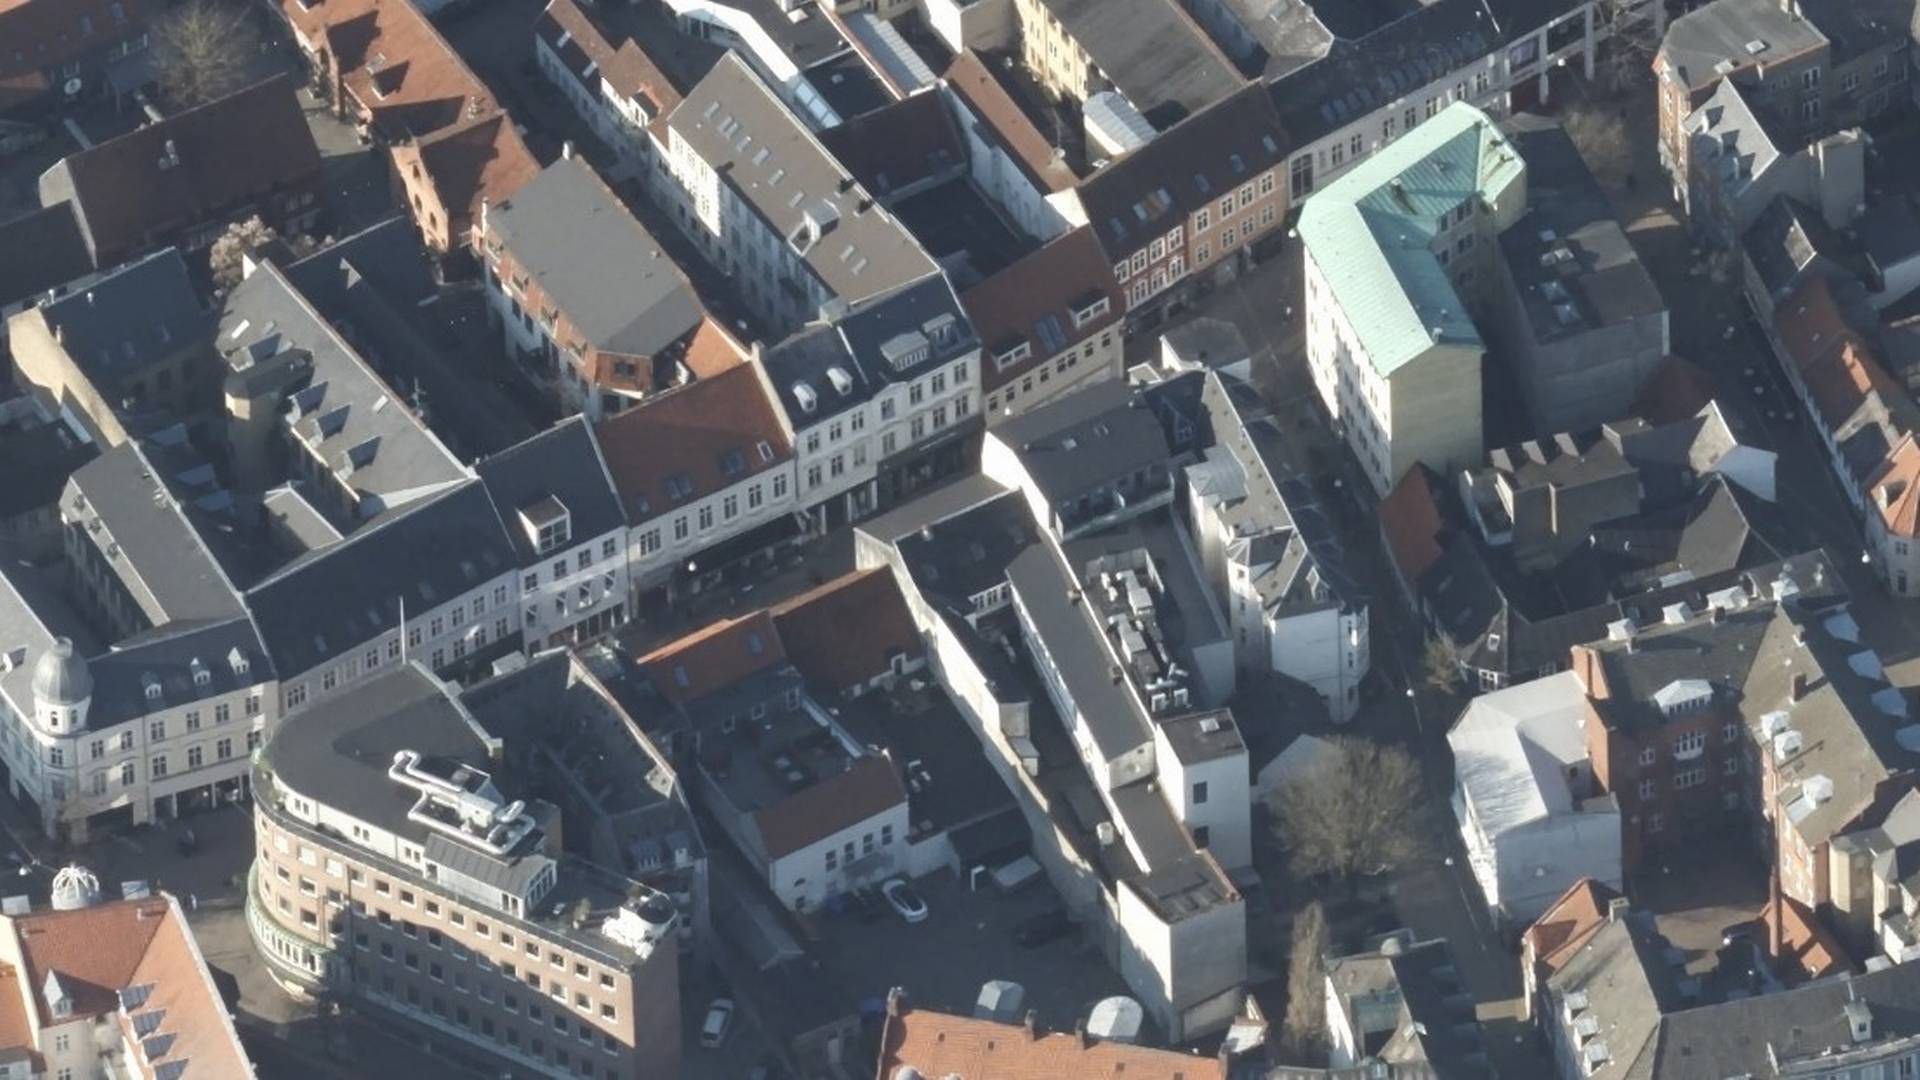 Ejendommen Vestergade 49 i Odense ses midt i billedet øverst, hvor den dengang gule bygning med passage til bygningen bagved nu er istandsat. | Foto: Styrelsen for Dataforsyning og Infrastruktur